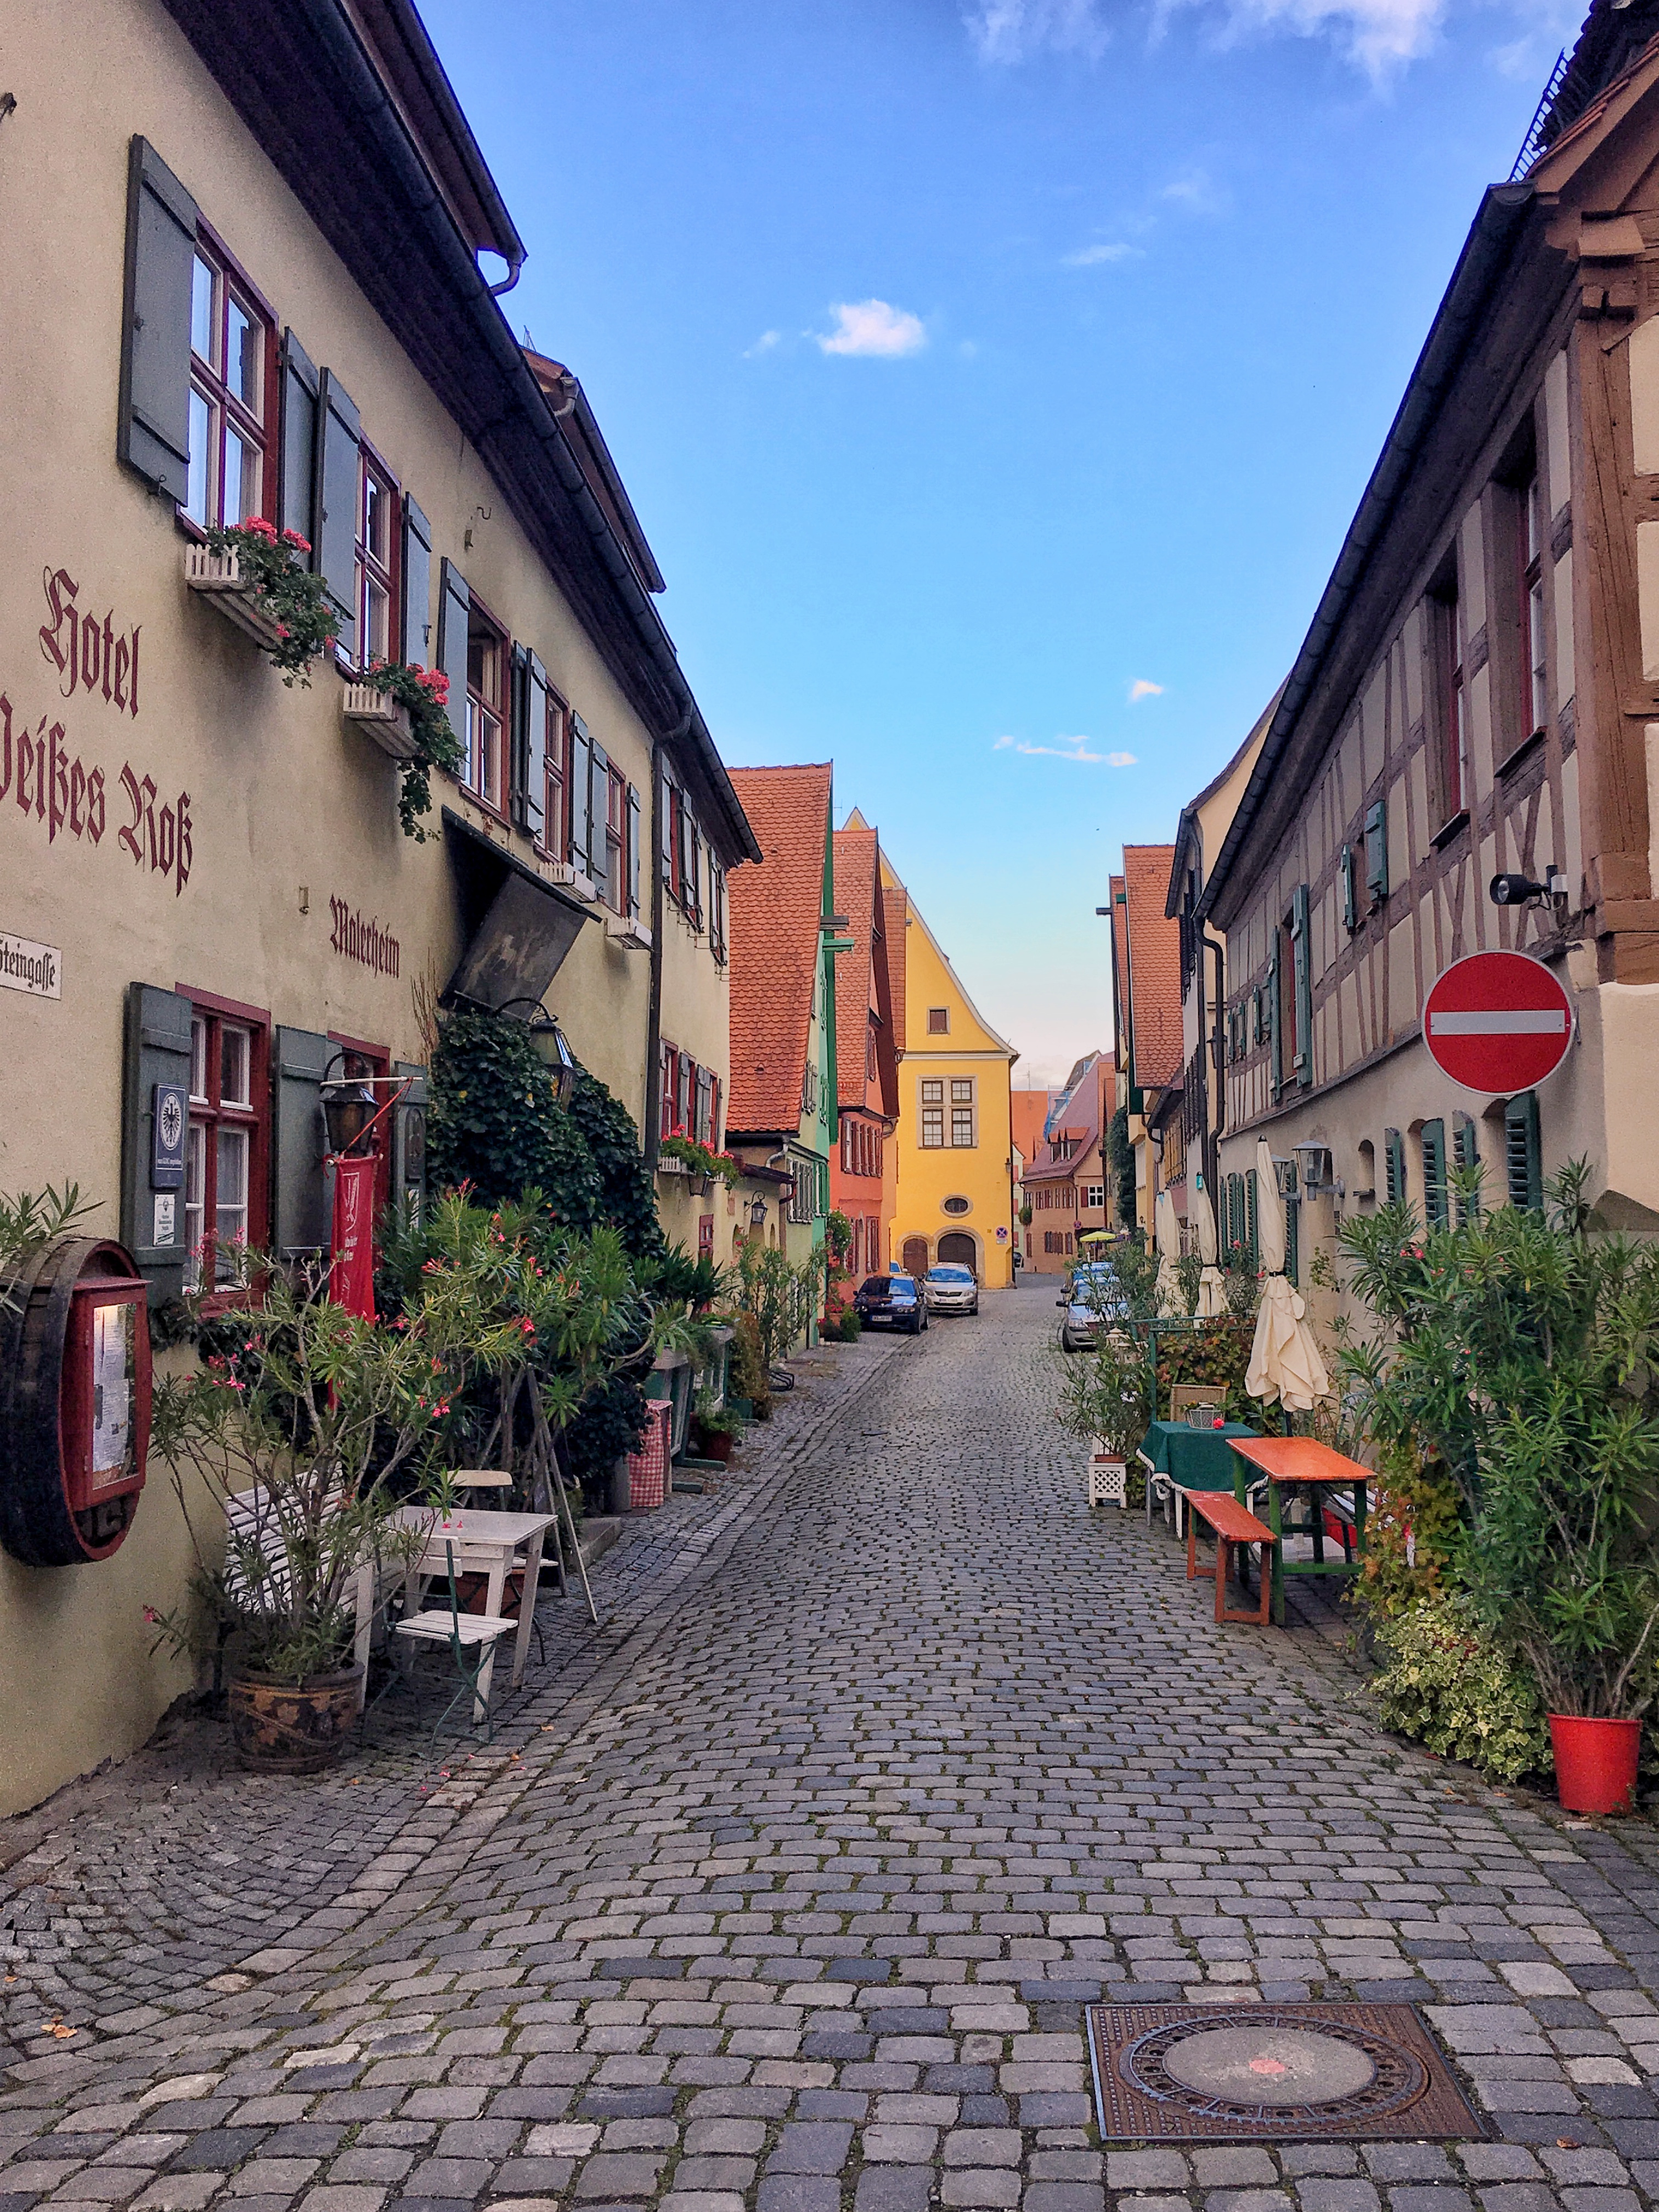 Streets of Dinkelsbuhl